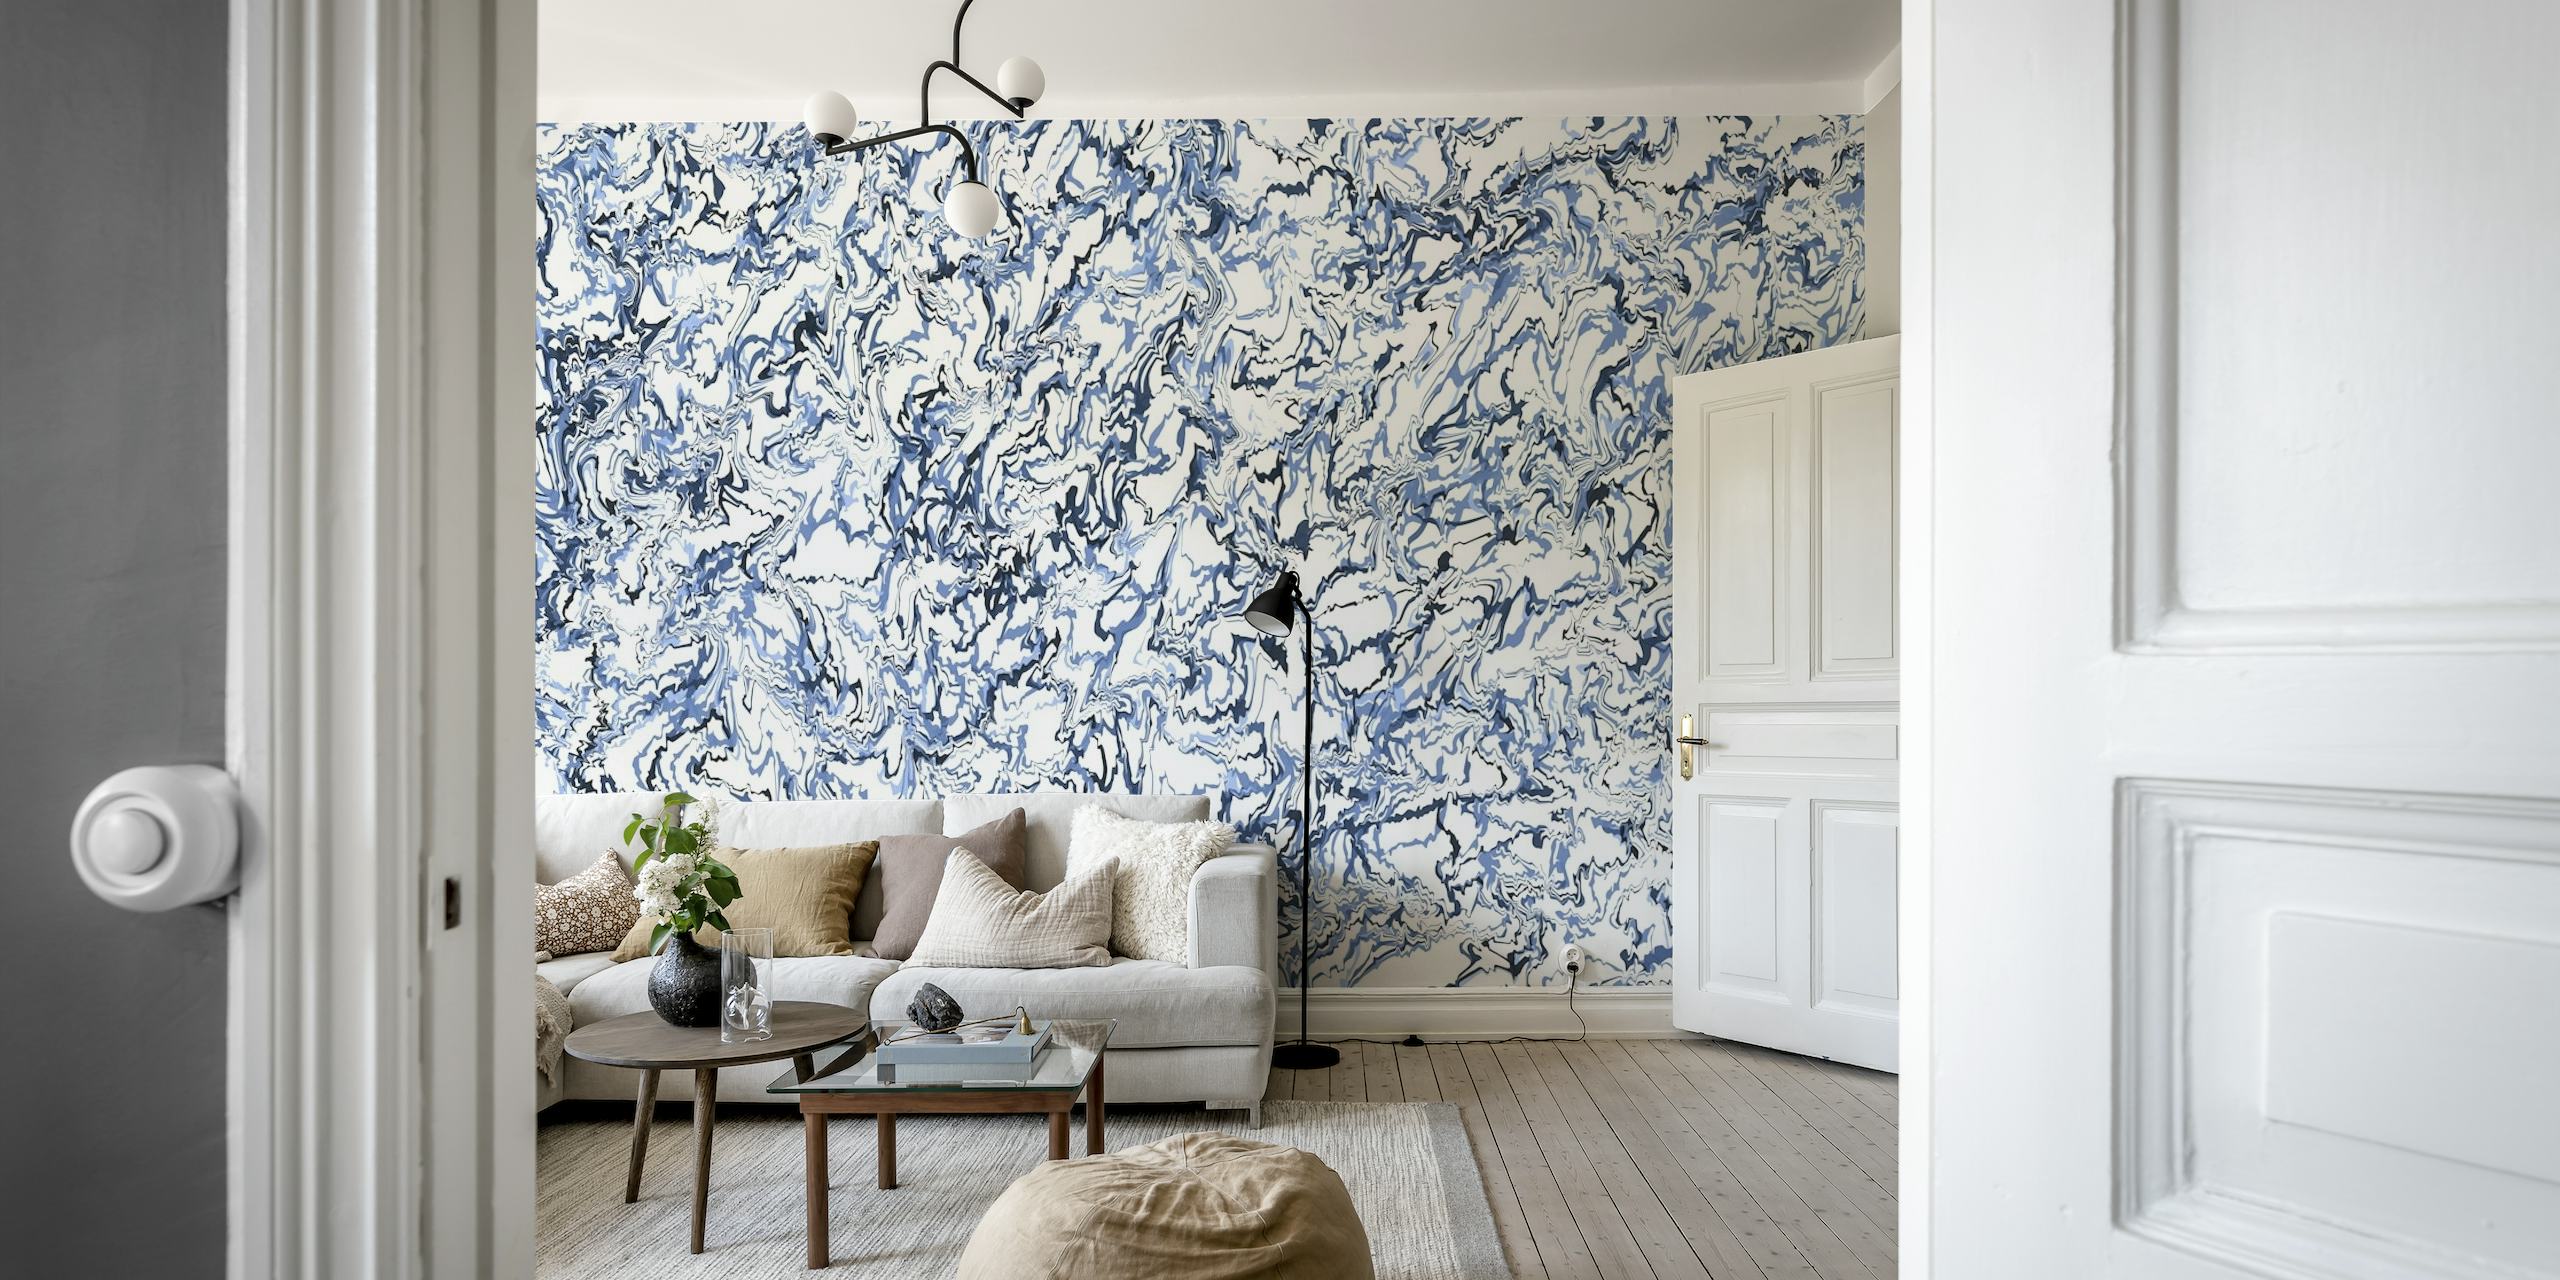 Wandbild mit abstraktem blauem Pour-Gemälde und wirbelnden Mustern